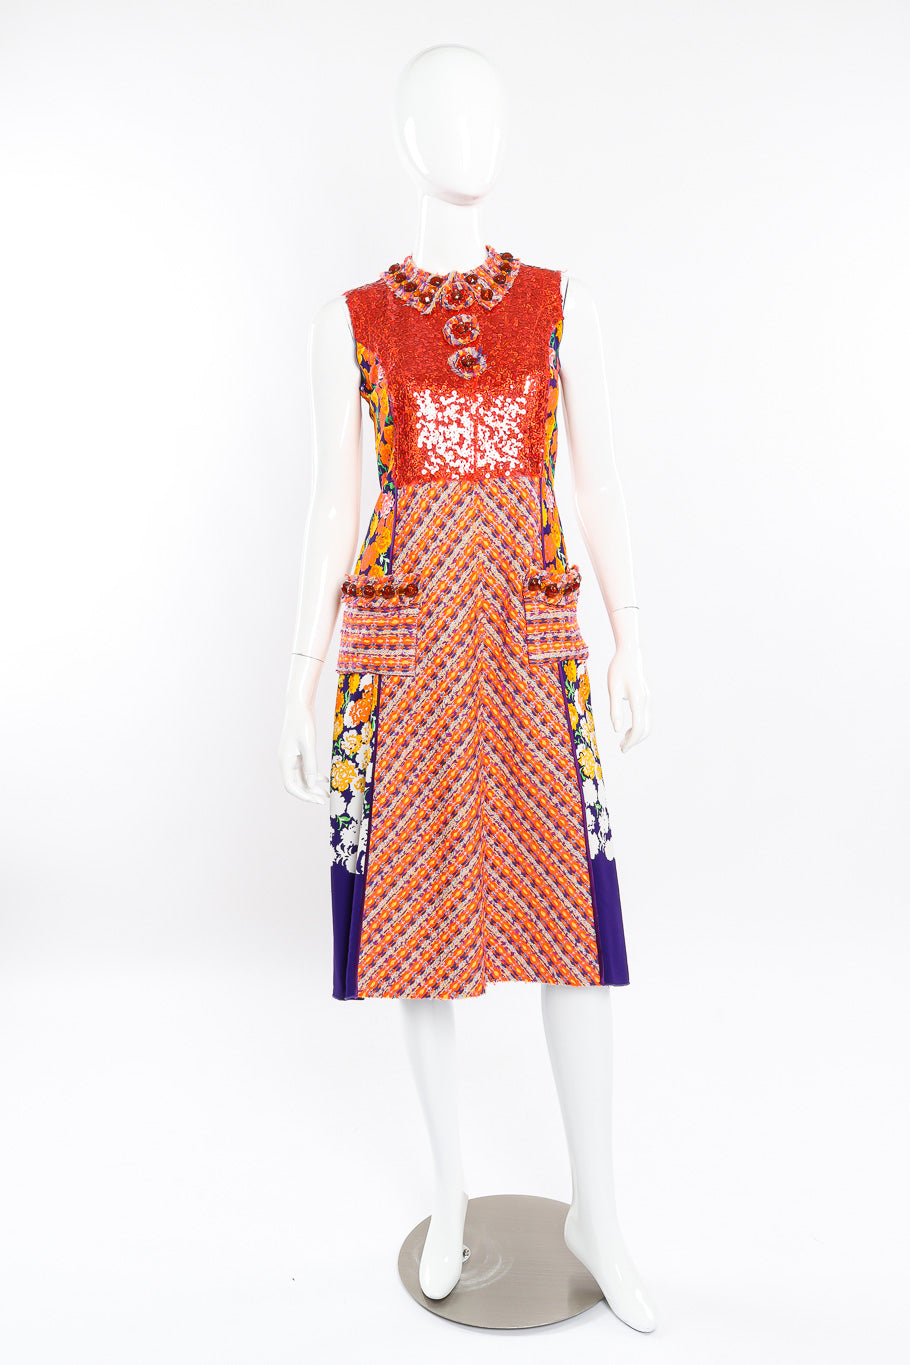 Floral lamé knit sequin dress by Marc Jacobs on mannequin front @recessla